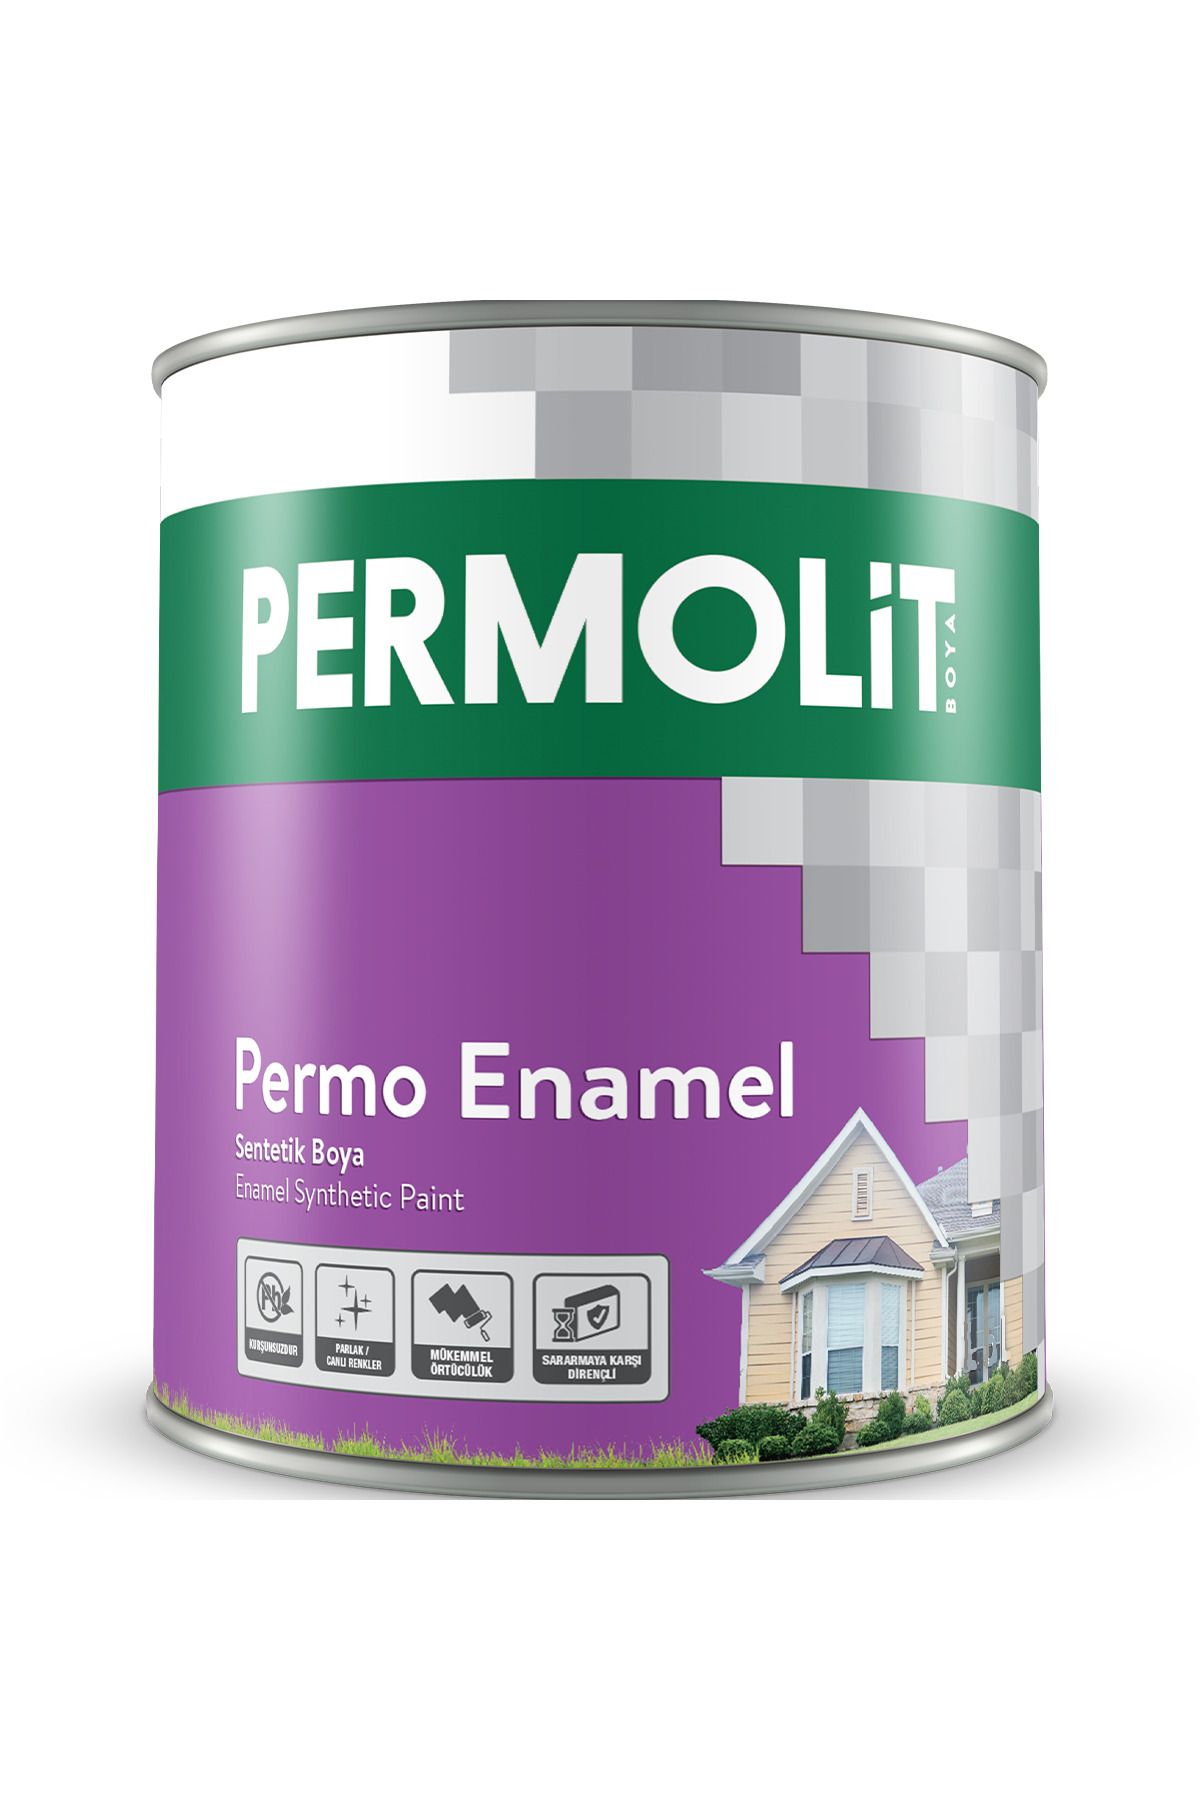 Permolit Permo Enamel Fırtına Sentetik Boya 2,5 Lt. 35 Farklı Renk